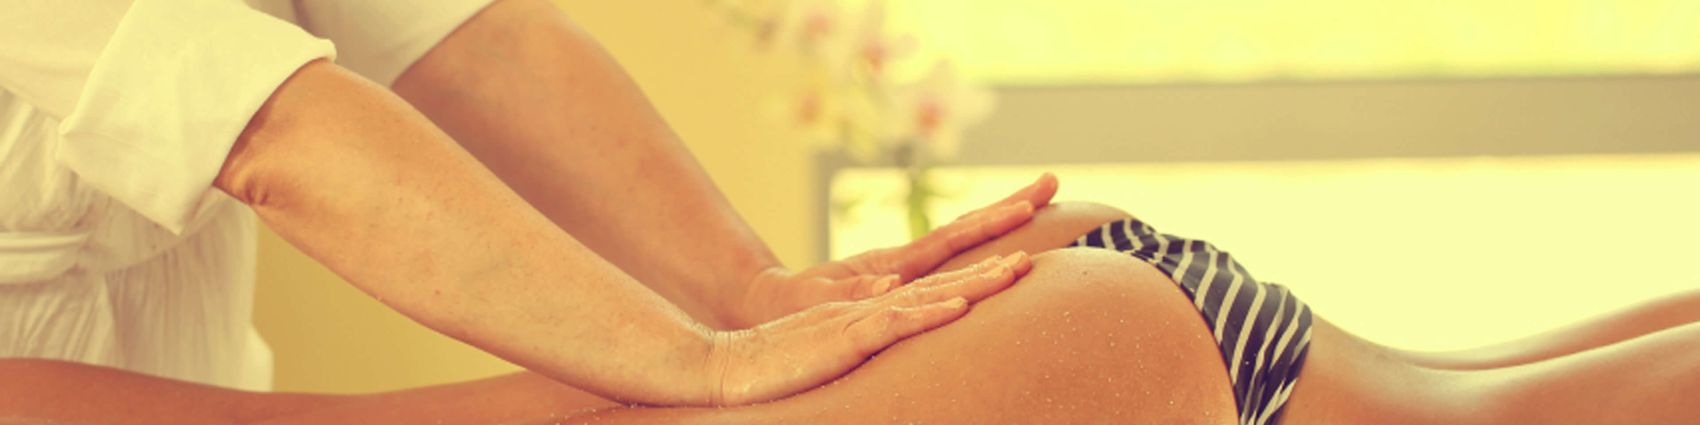 Massage im Luxus-Hotel